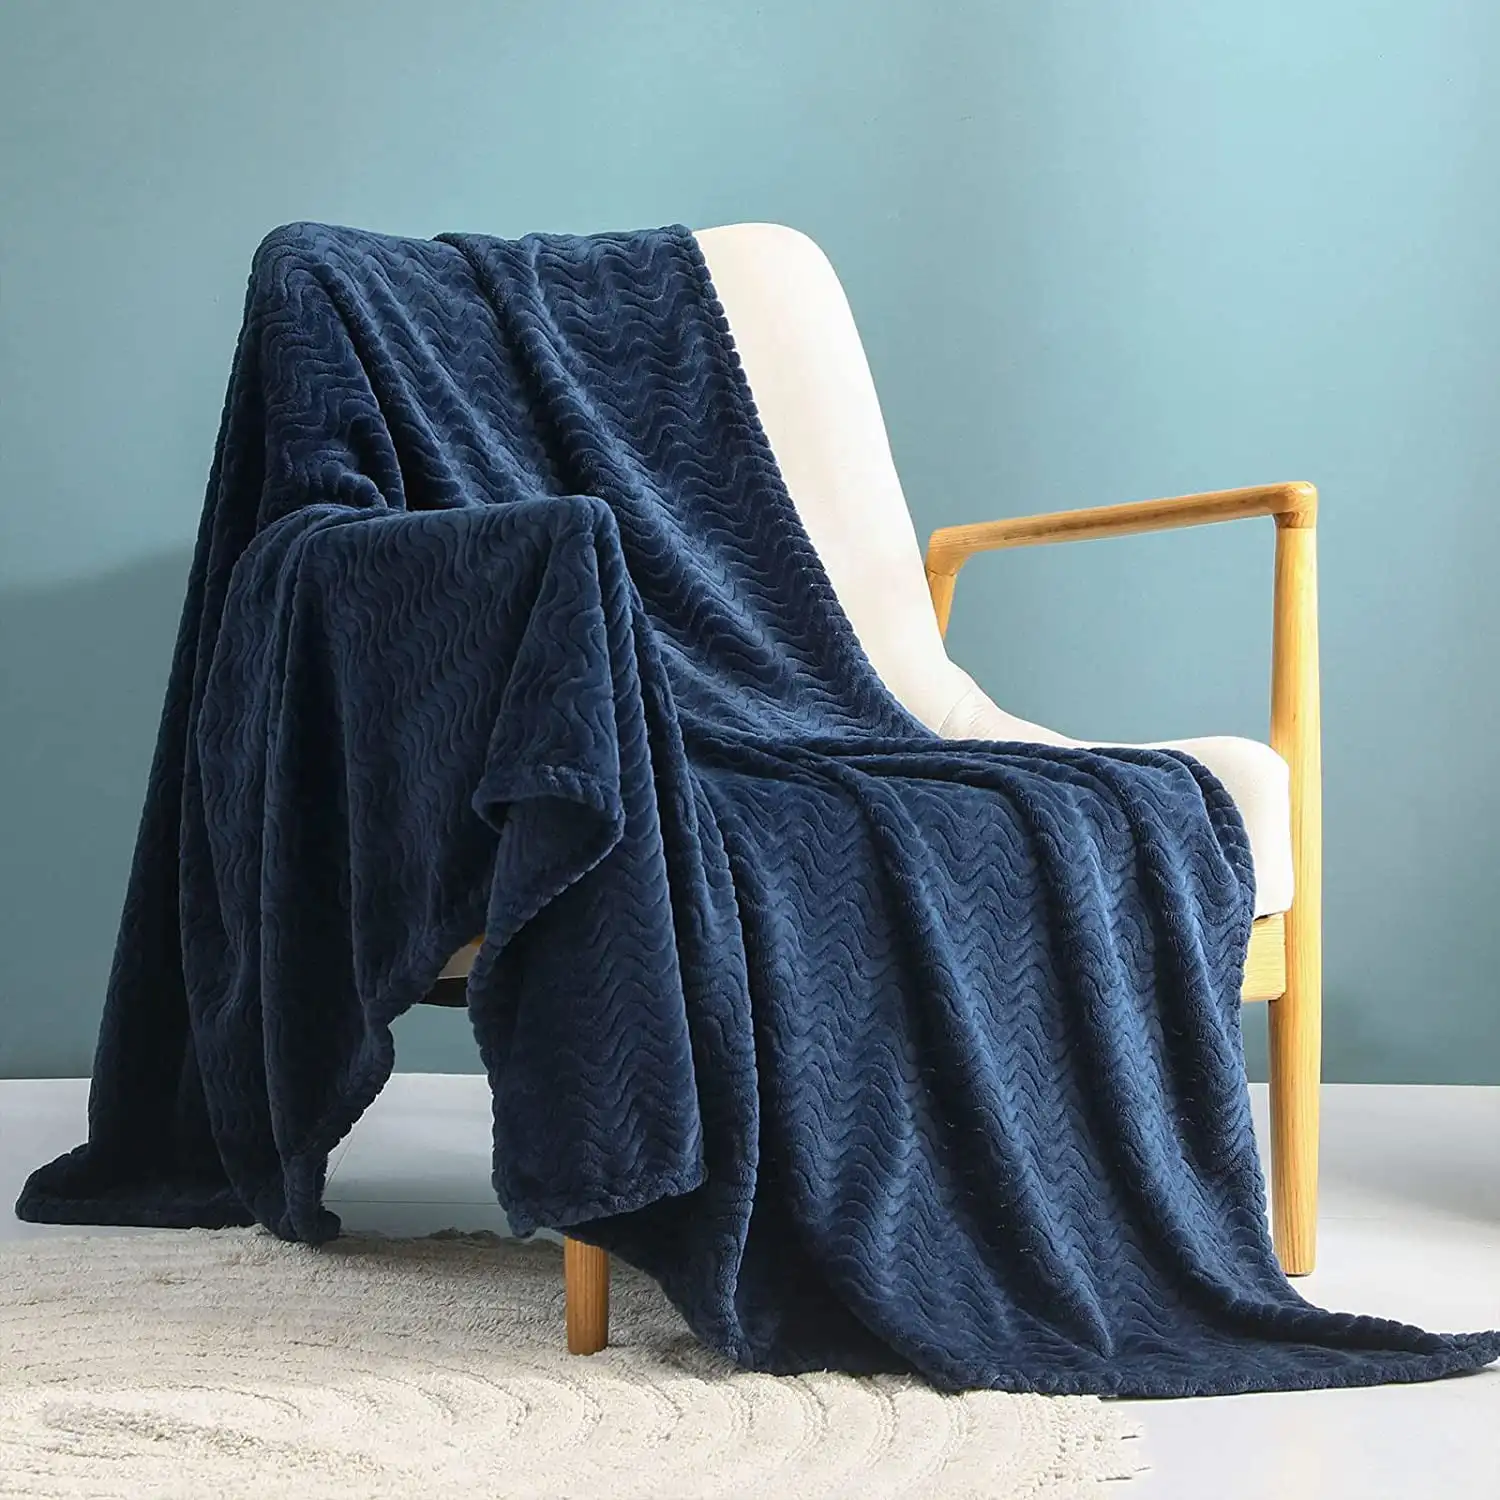 

Большое Фланелевое Флисовое одеяло, жаккардовый узор волн (50x70 дюймов, темно-синий), мягкое теплое легкое и декоративное одеяло